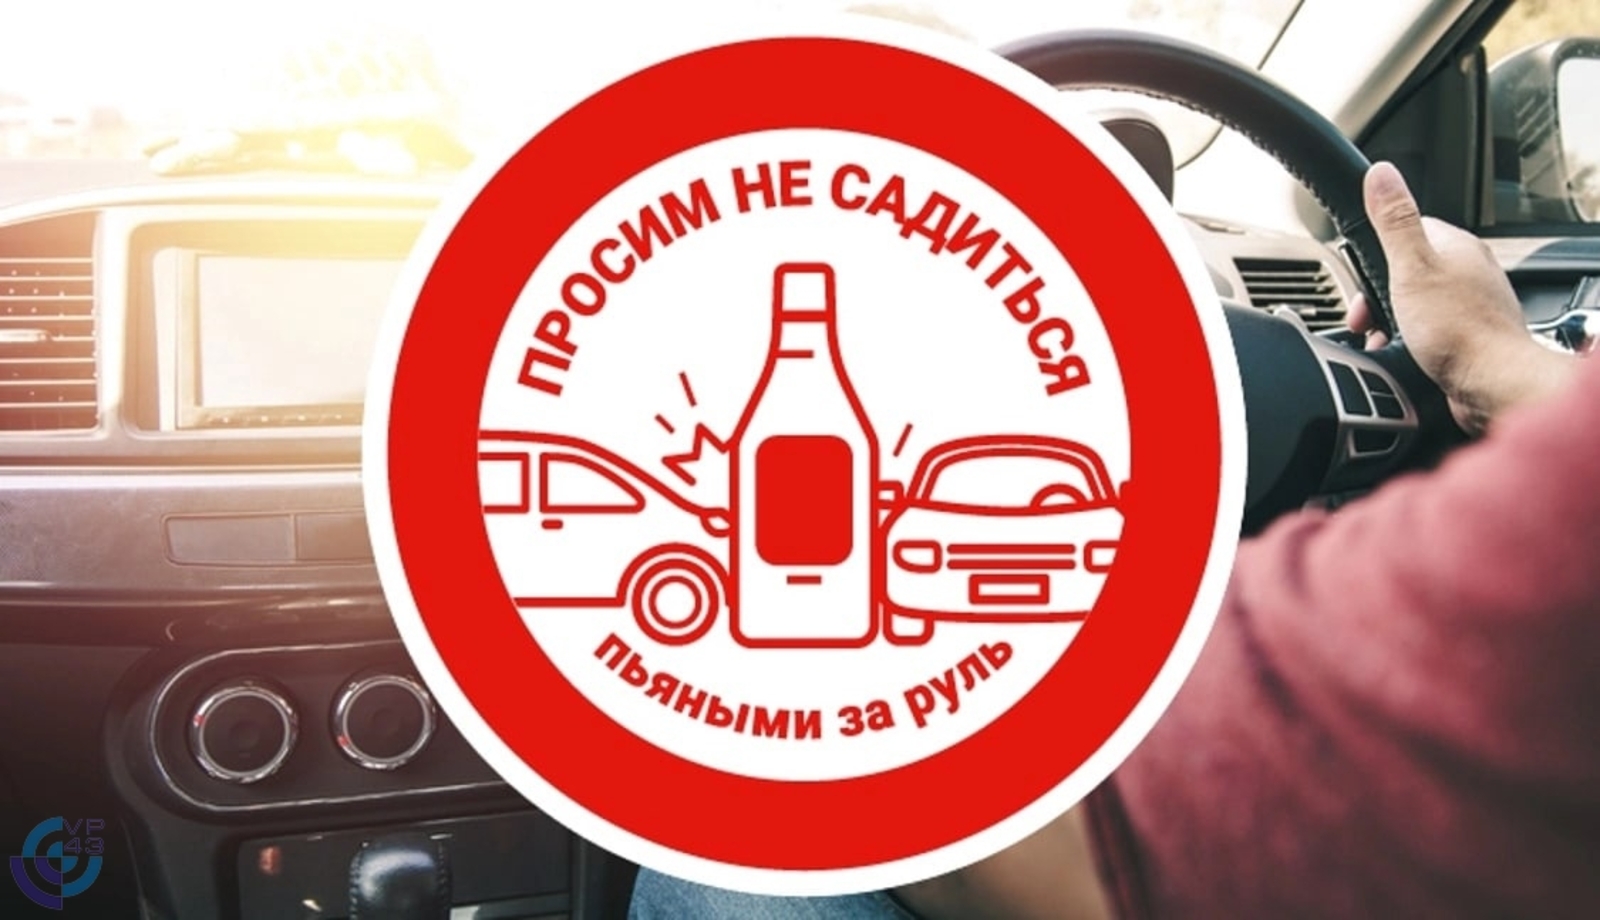 В Башкортостане вынесен приговор мужчине за неоднократную пьяную езду